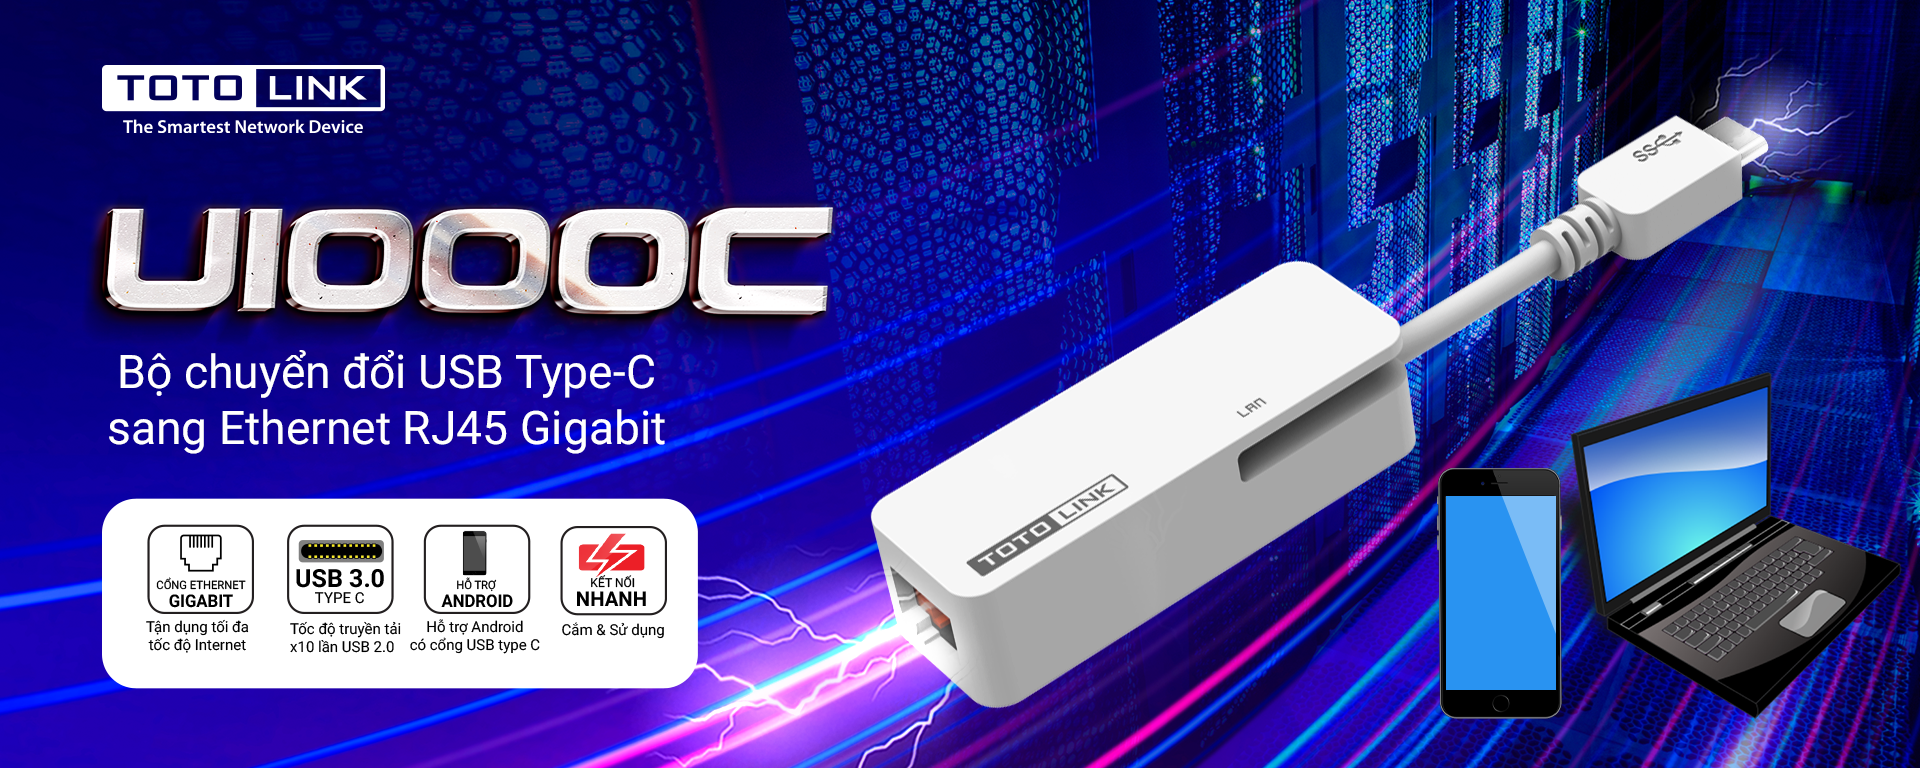 U1000C - Bộ chuyển đổi USB Type-C sang Ethernet RJ45 Gigabit Hàng chính hãng Totolink.